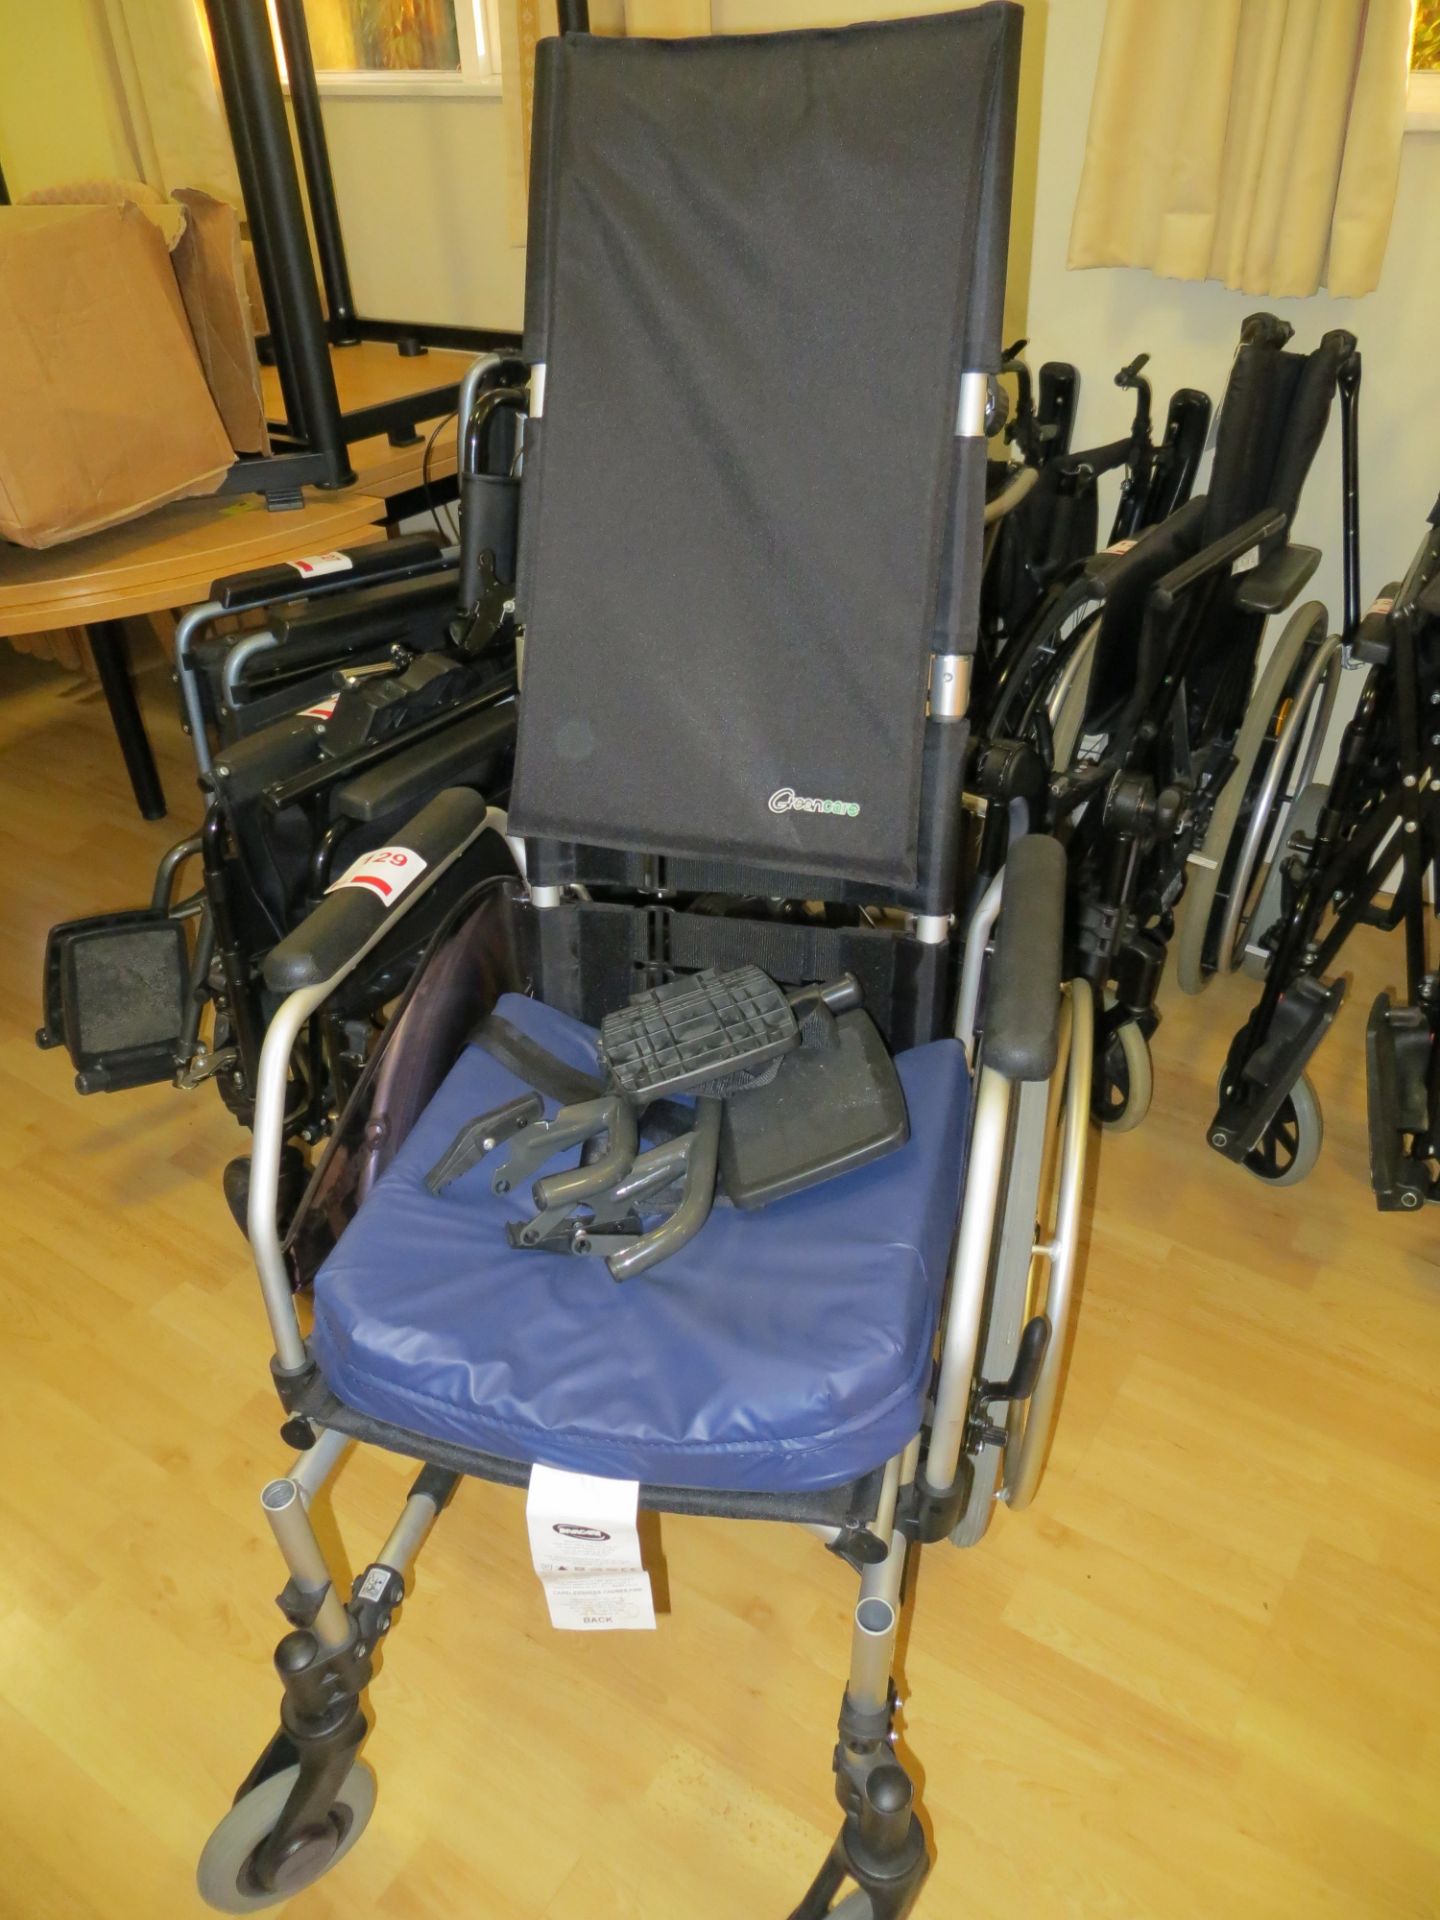 Greencare wheelchair s/n G52 0400182